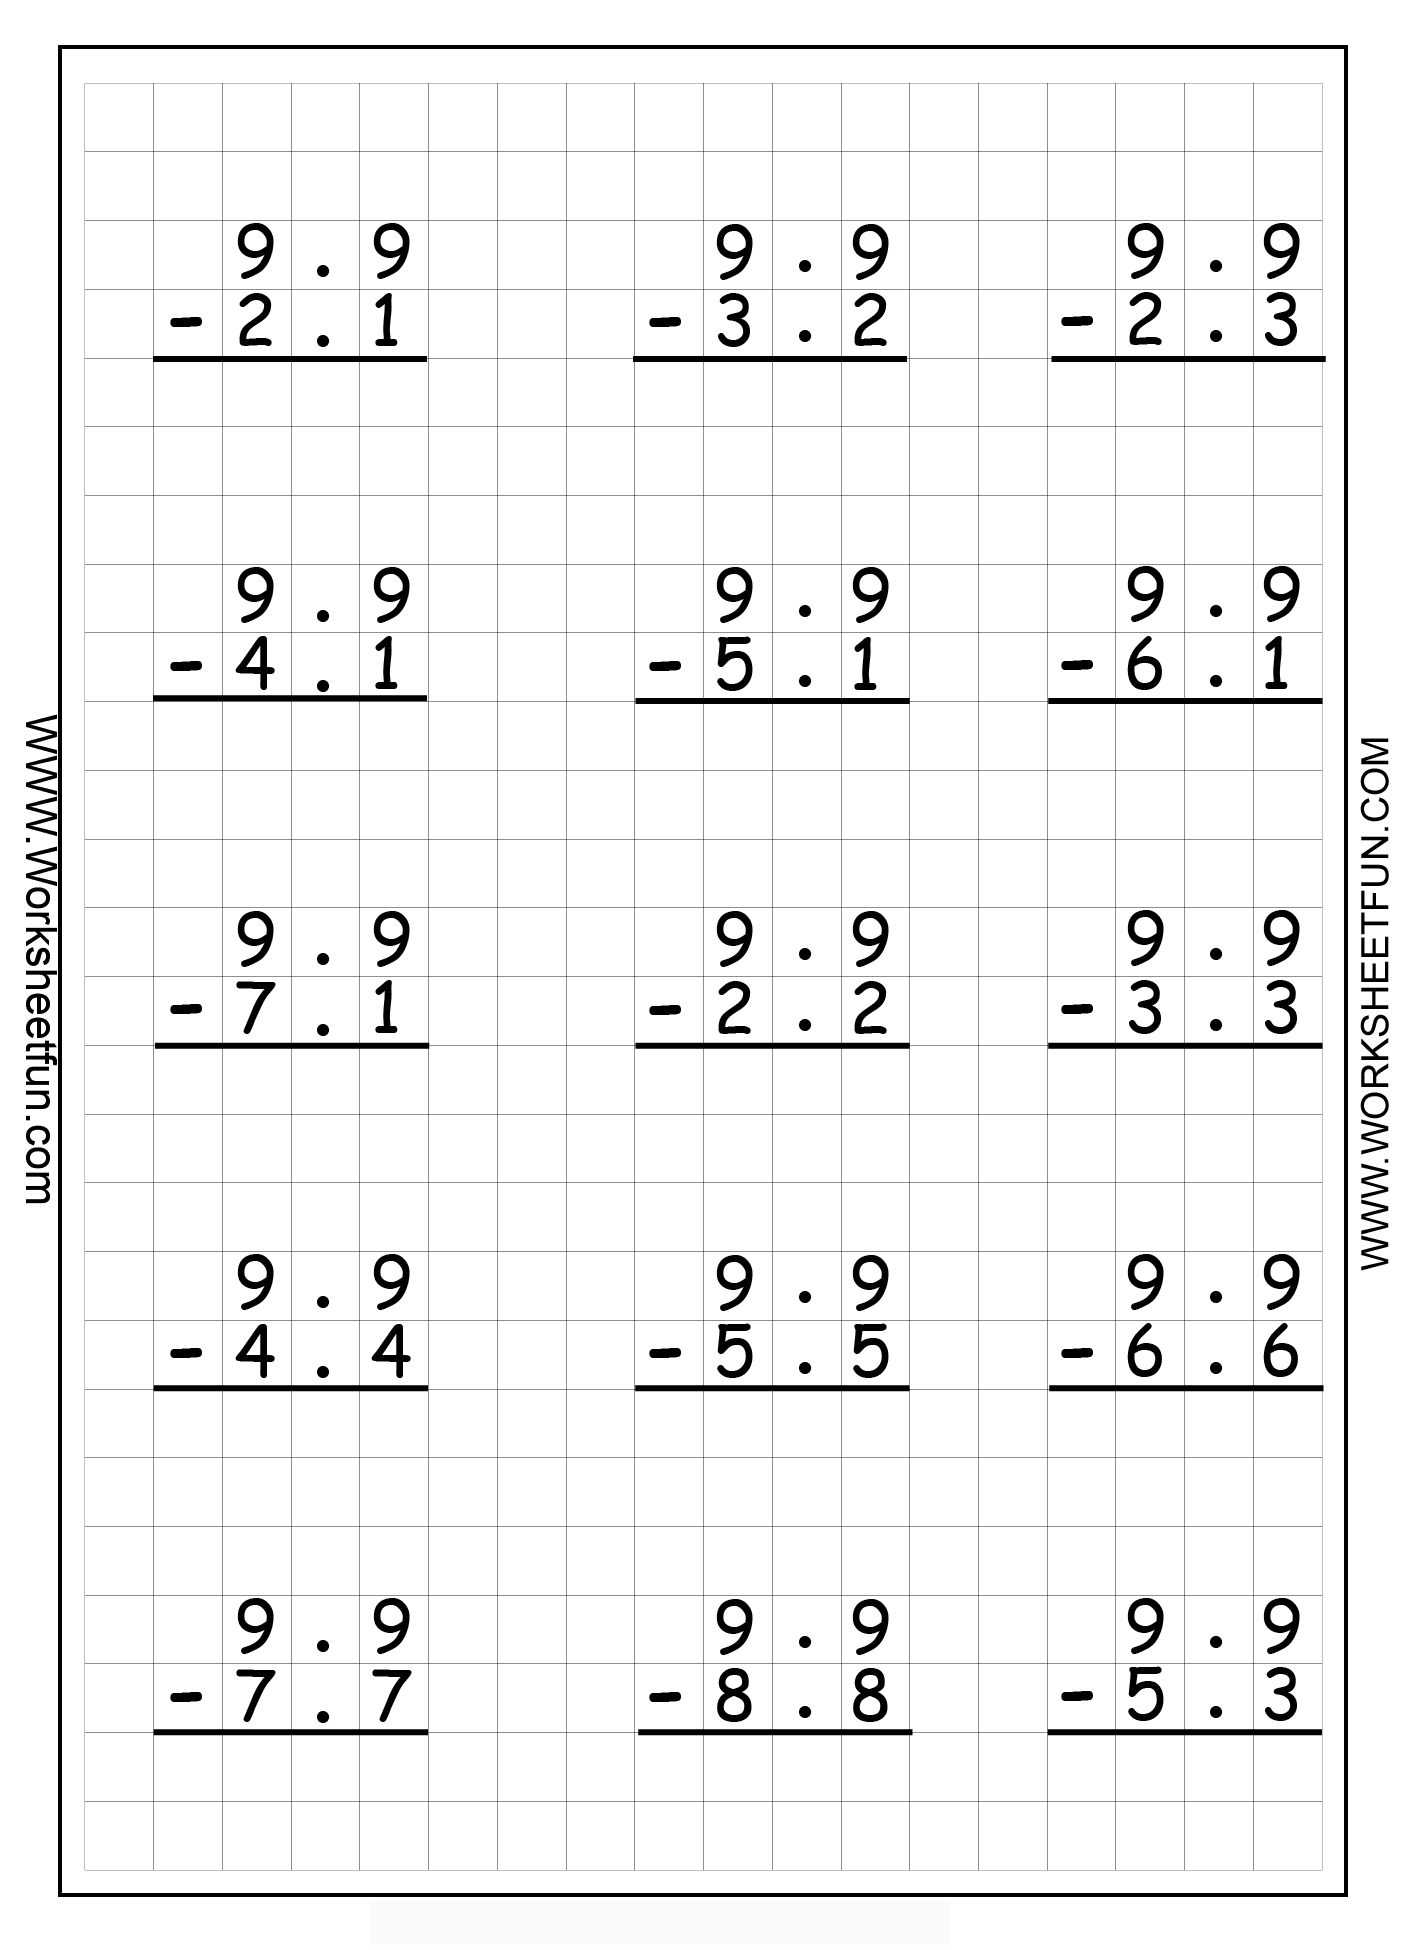 13-best-images-of-addition-grid-worksheet-math-drills-multiplication-worksheets-printable